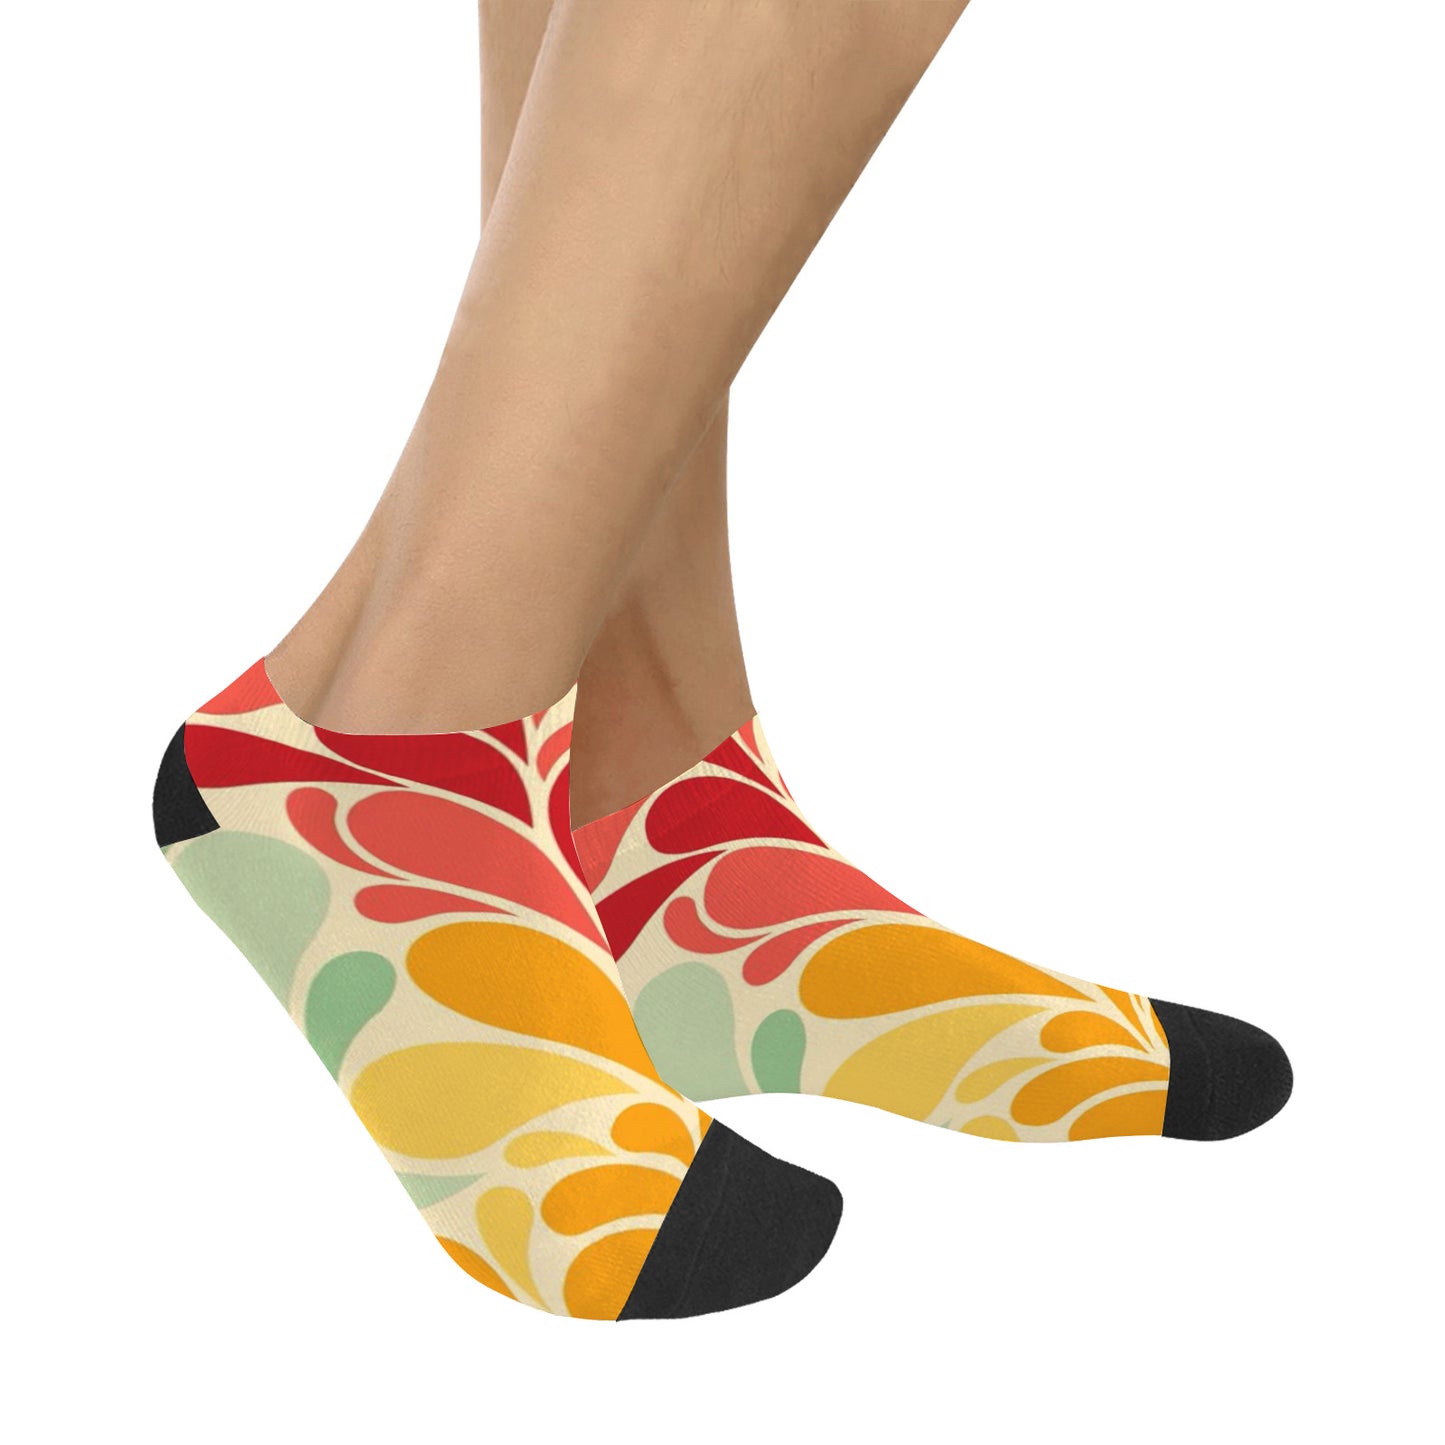 Women's Ankle Socks - Retro